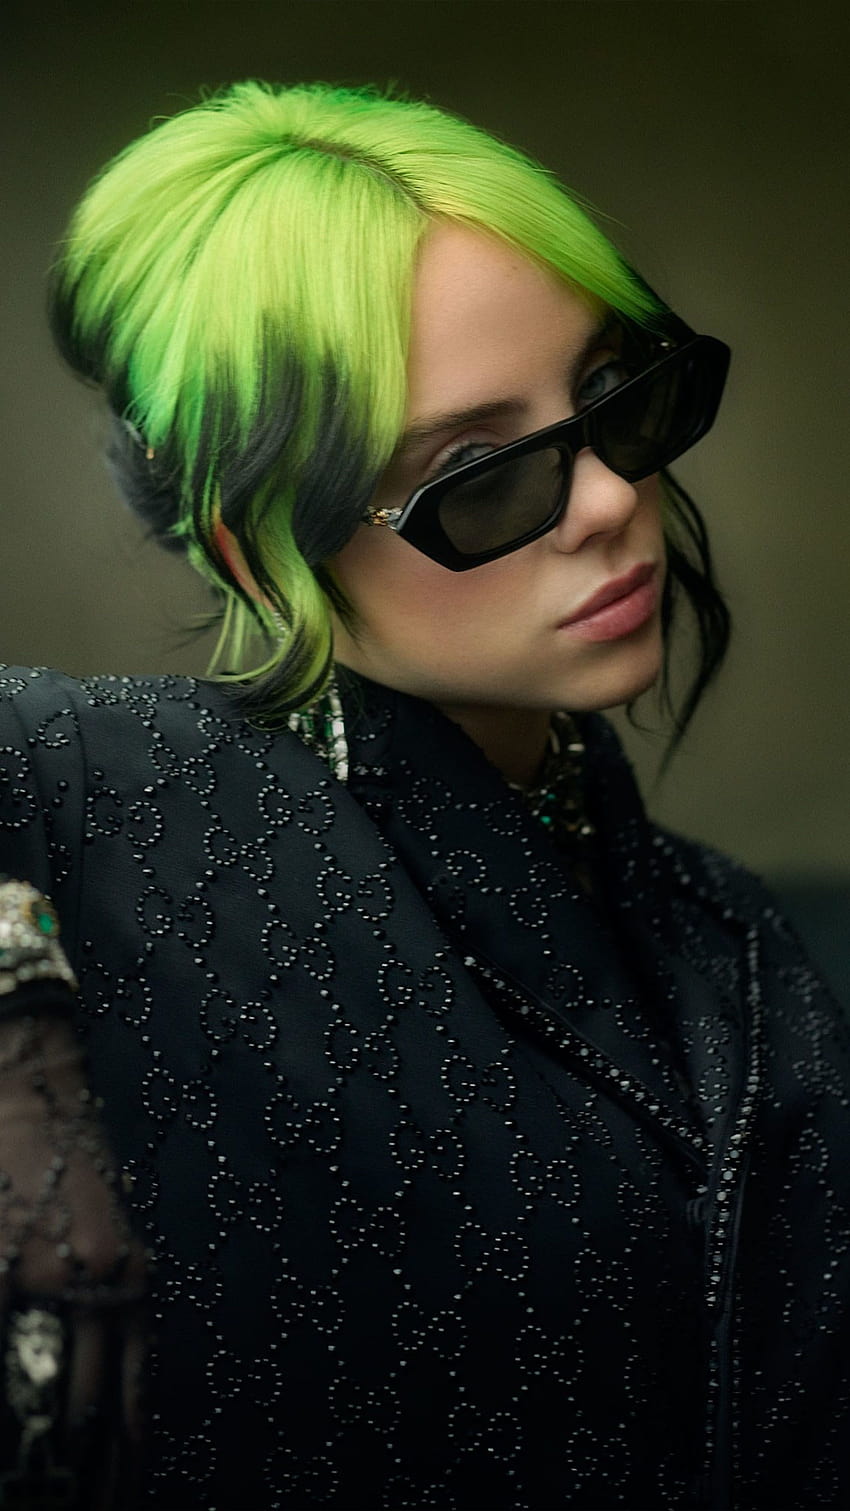 Singer Billie Eilish Green Hair Ultra Mobile in 2021, billie eilish singer 2021 HD phone wallpaper